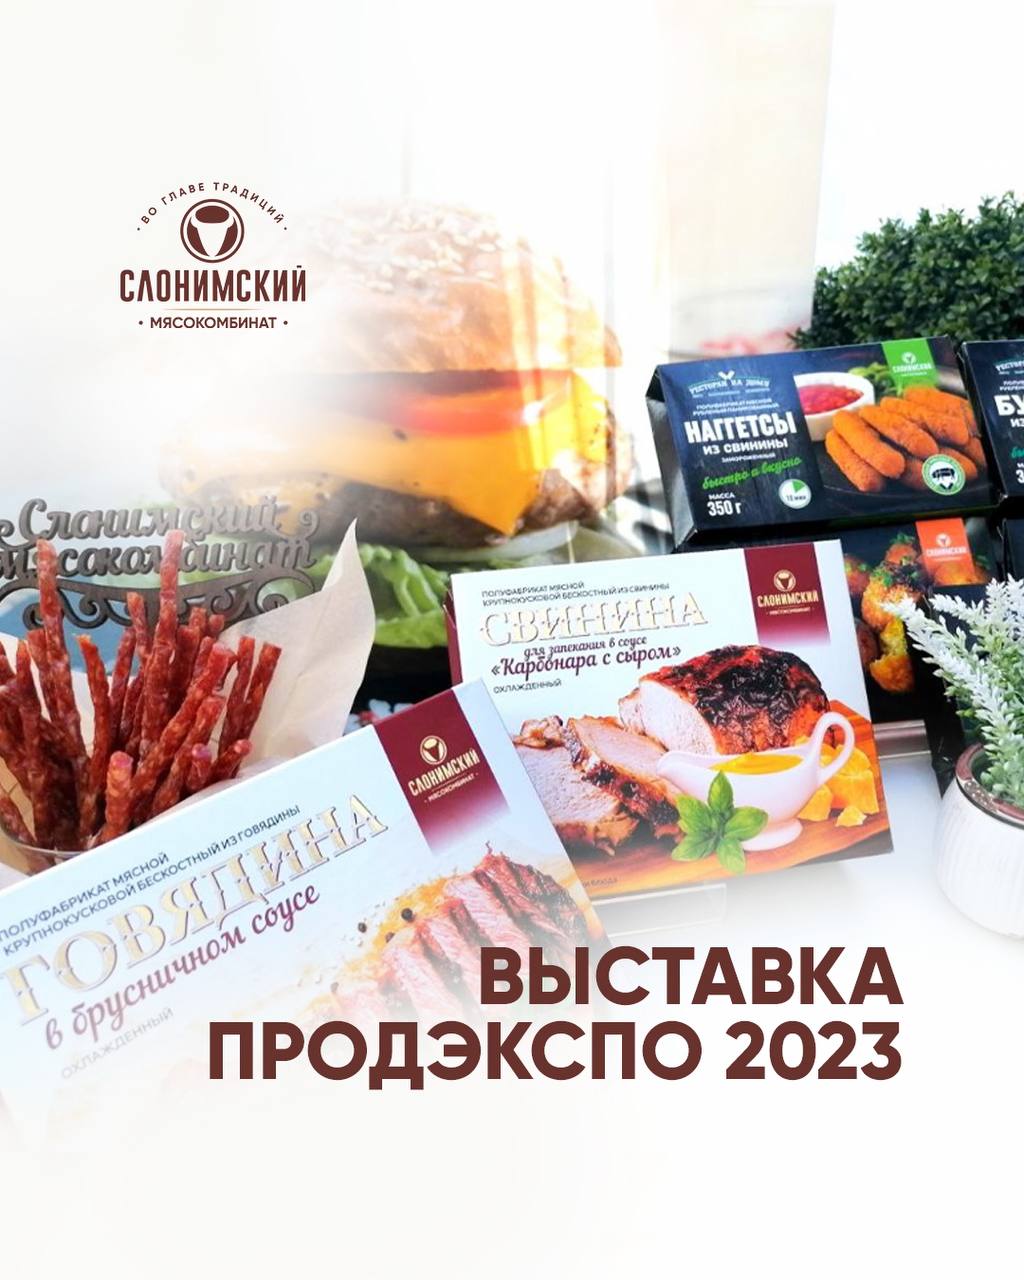 “Работа Кипит!” Слонимский мясокомбинат принимает участие в 30-й выставке Продэкспо-2023 в Москве